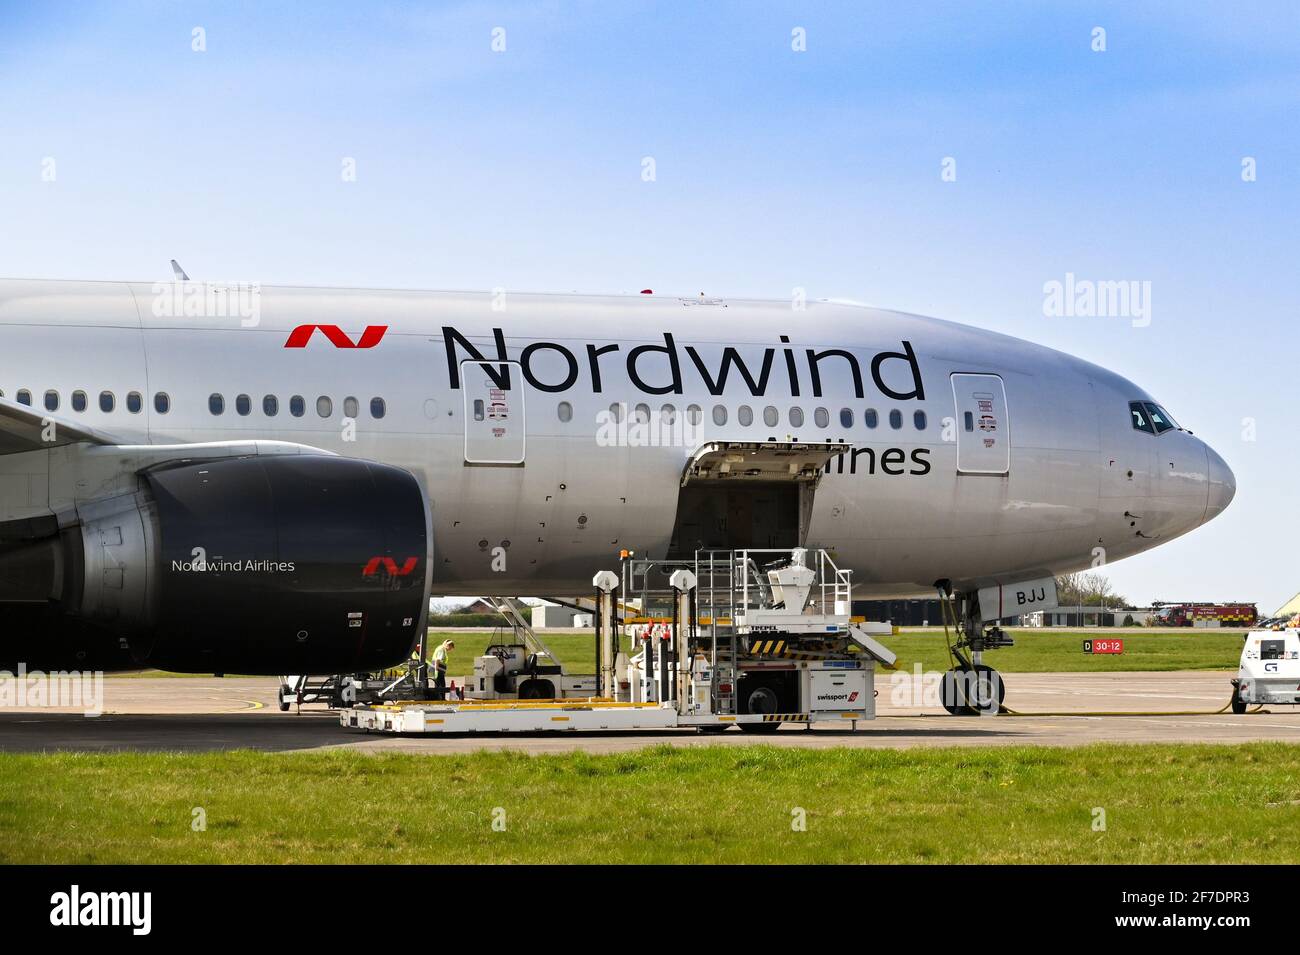 Cardiff, Wales - März 2021: Boeing 777 von Nordwind Airlines (Registraion VP-BJJ) mit Palettenlader zum Entladen von Luftfracht am Flughafen Cardiff Stockfoto